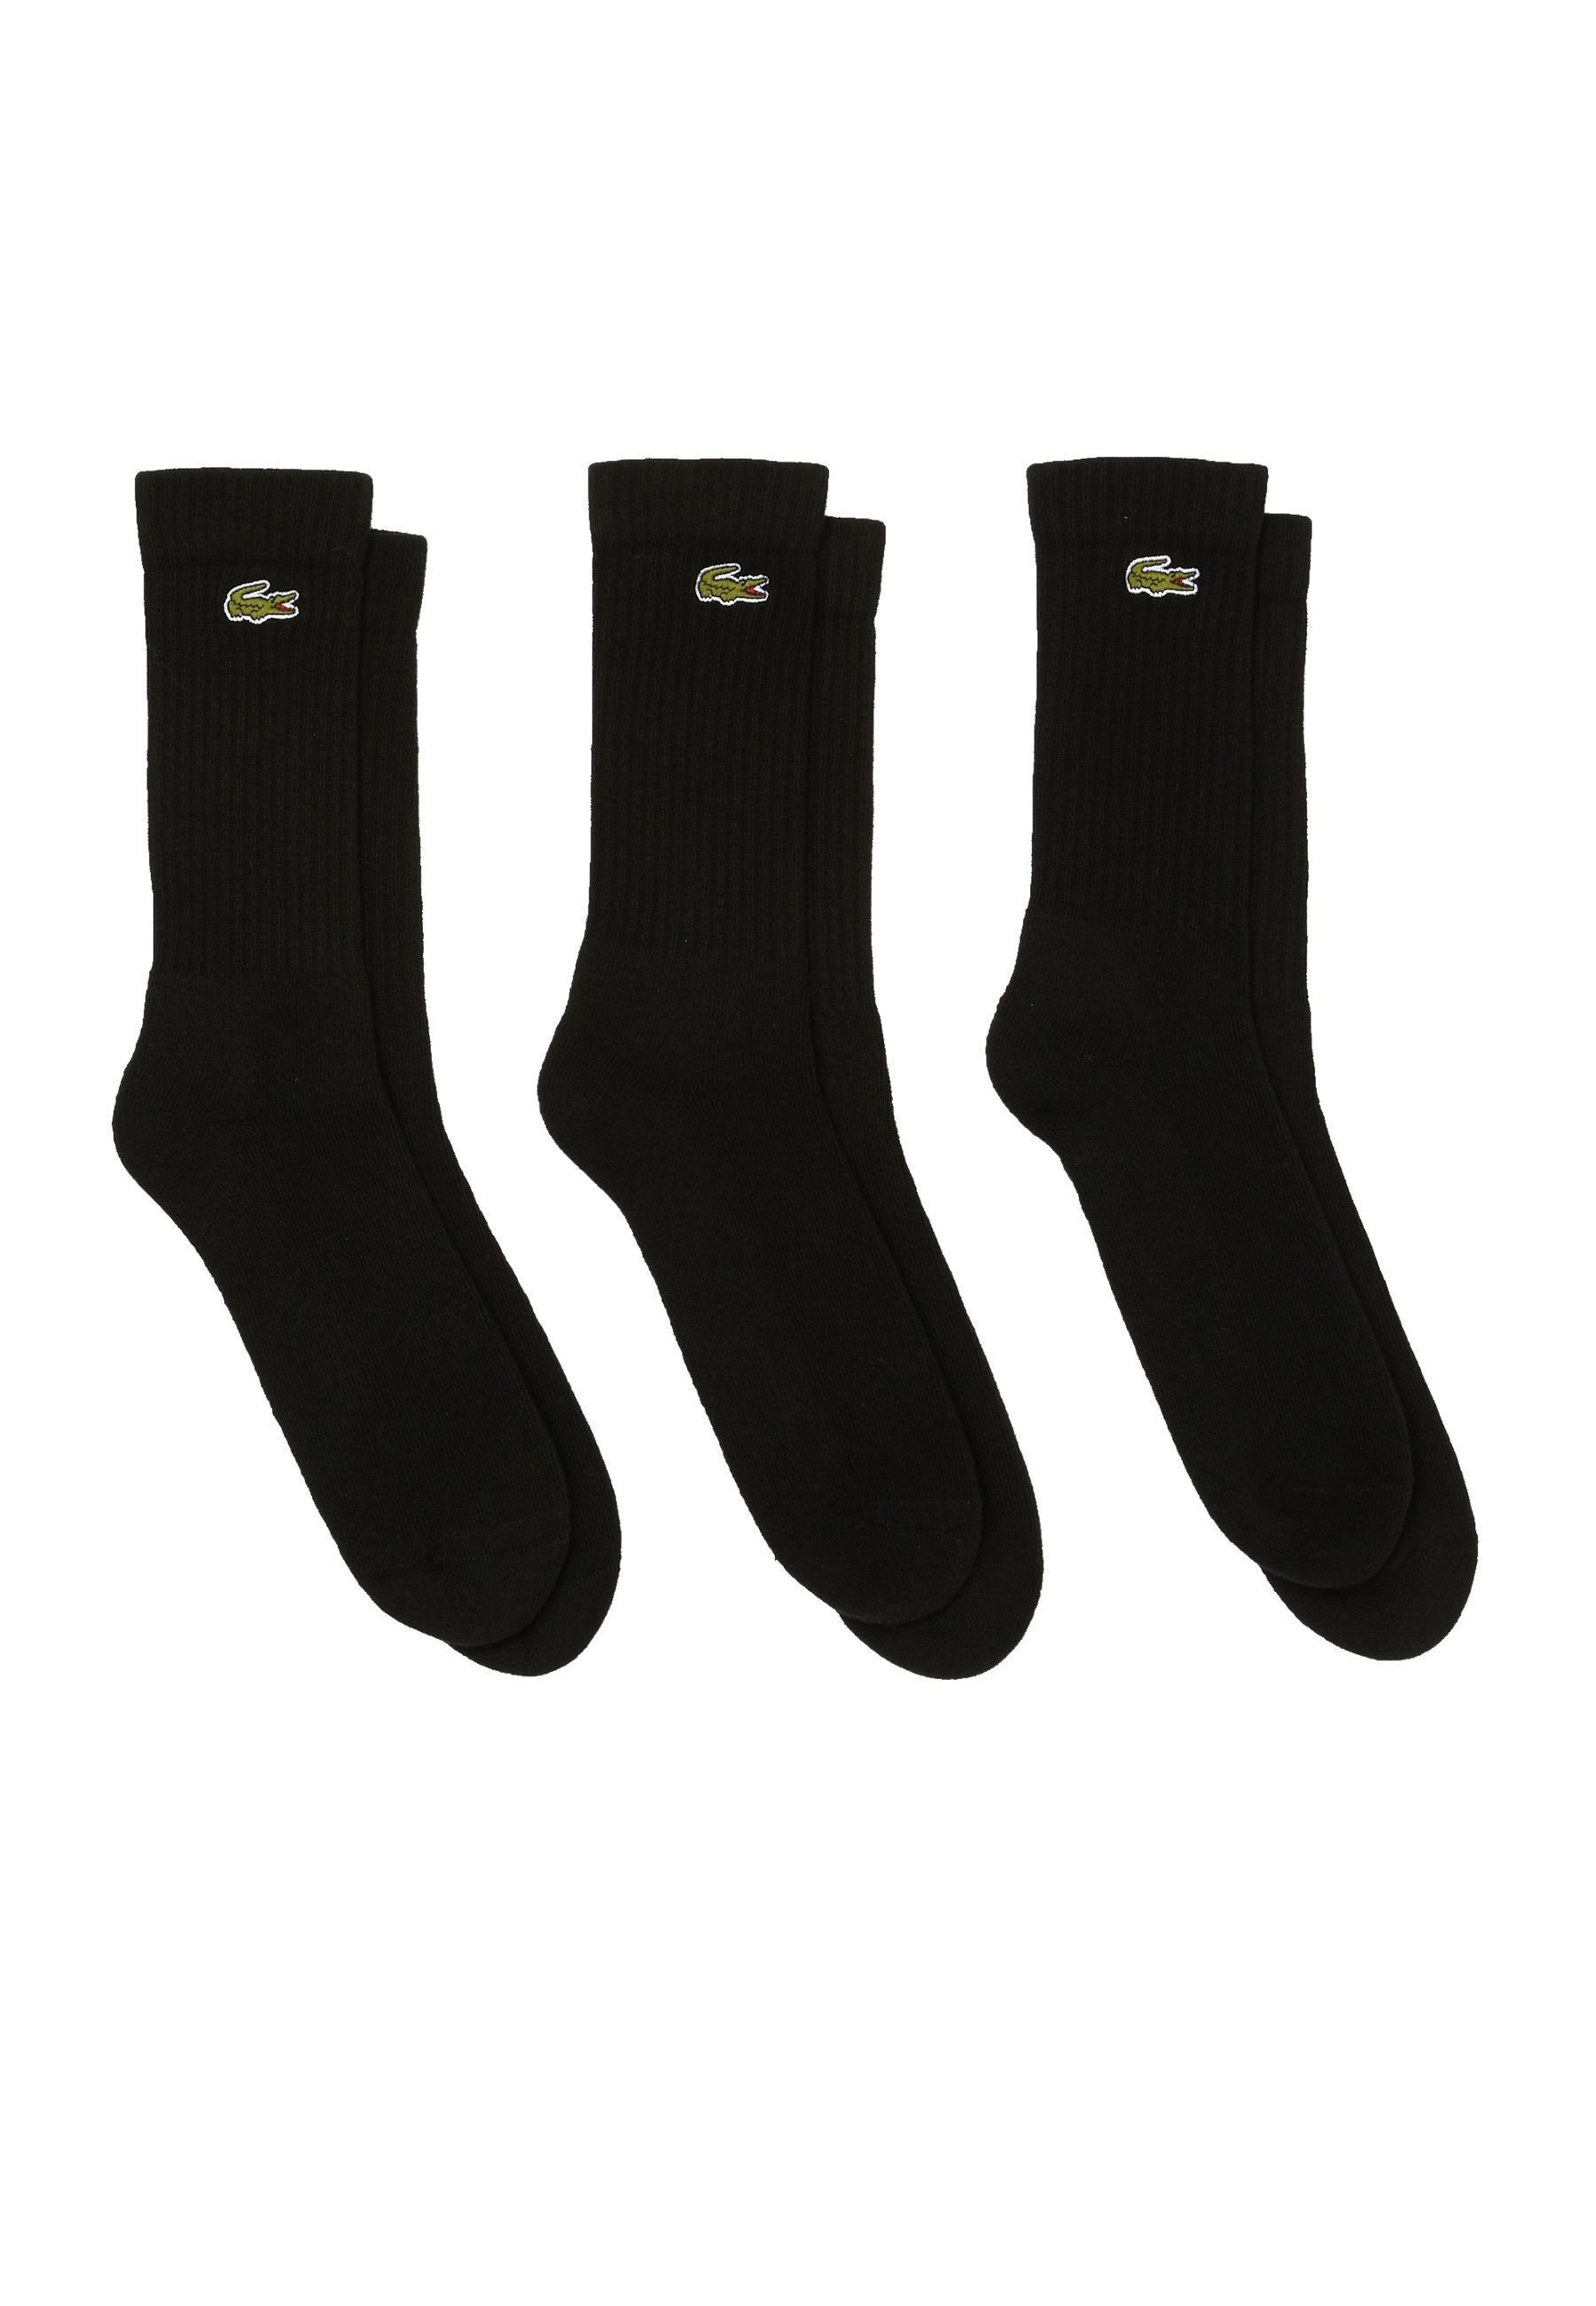 Lacoste Socken schwarz Dreierpack hohe Socken (3-Paar) Socken Permanent Offer